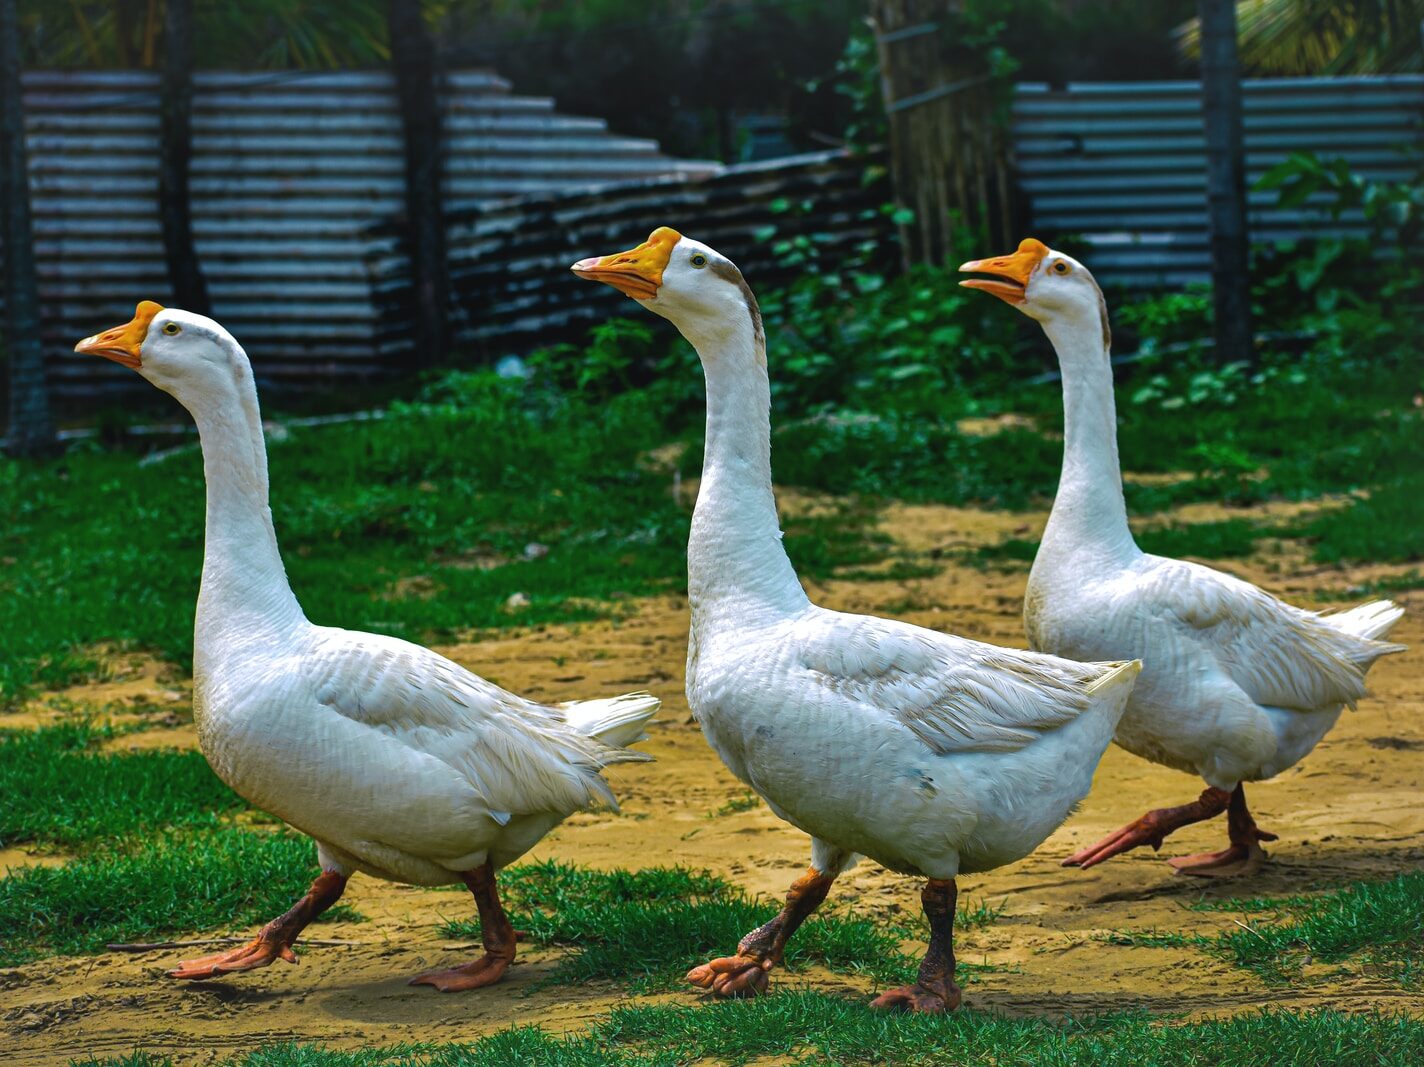 three white ducks walking